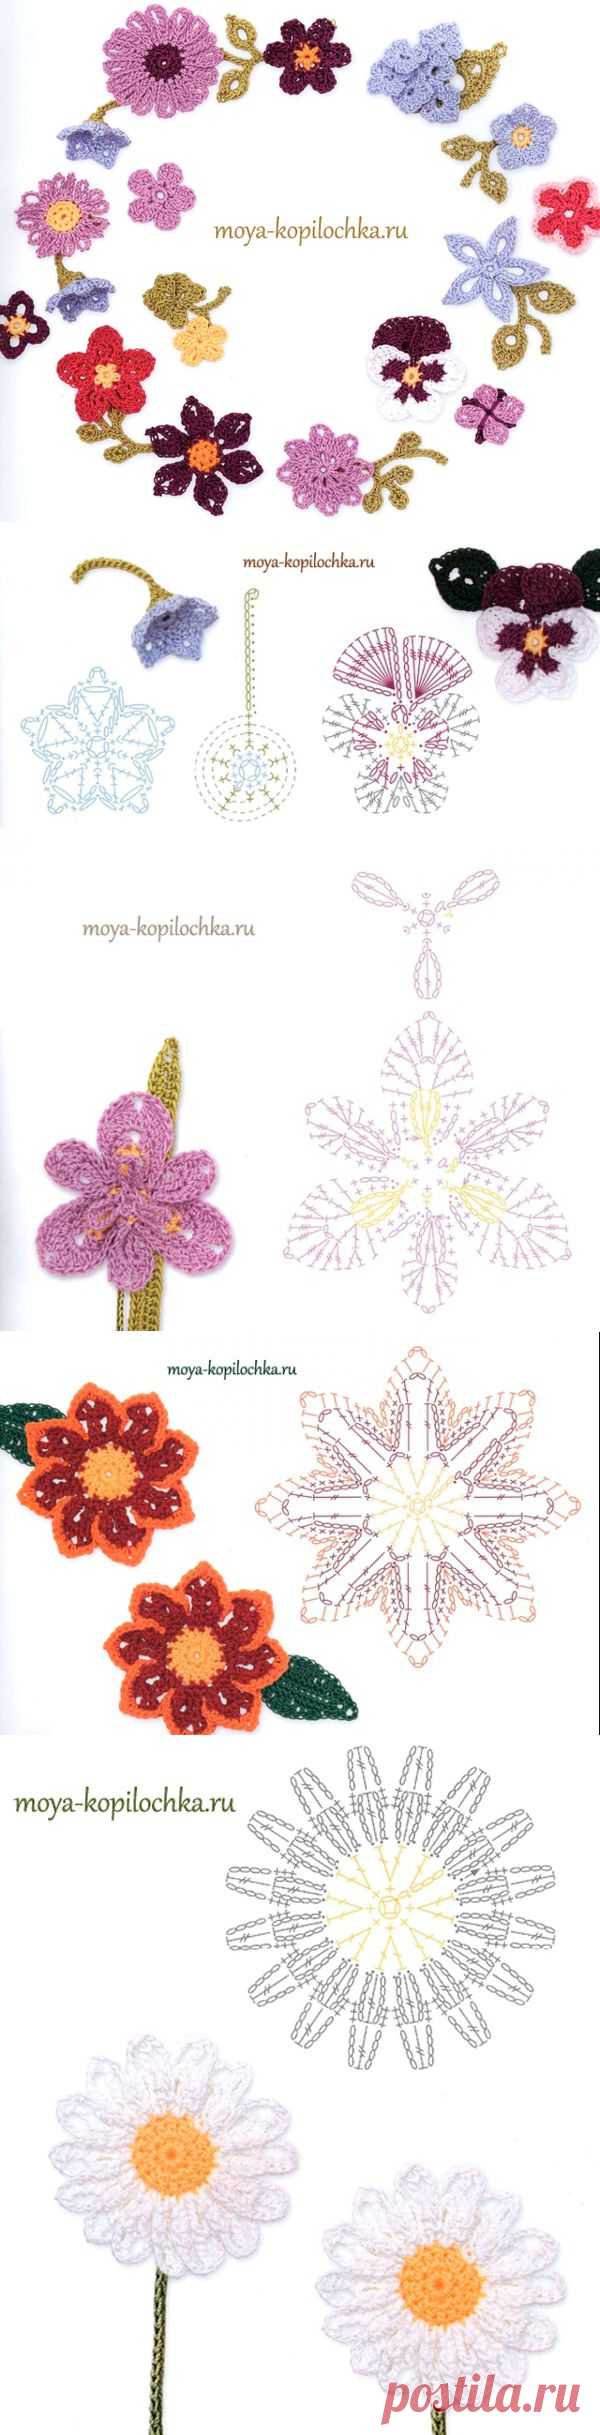 Вязаные цветы. 100 цветочных мотивов для вязания крючком со схемами - Вязание - Моя копилочка